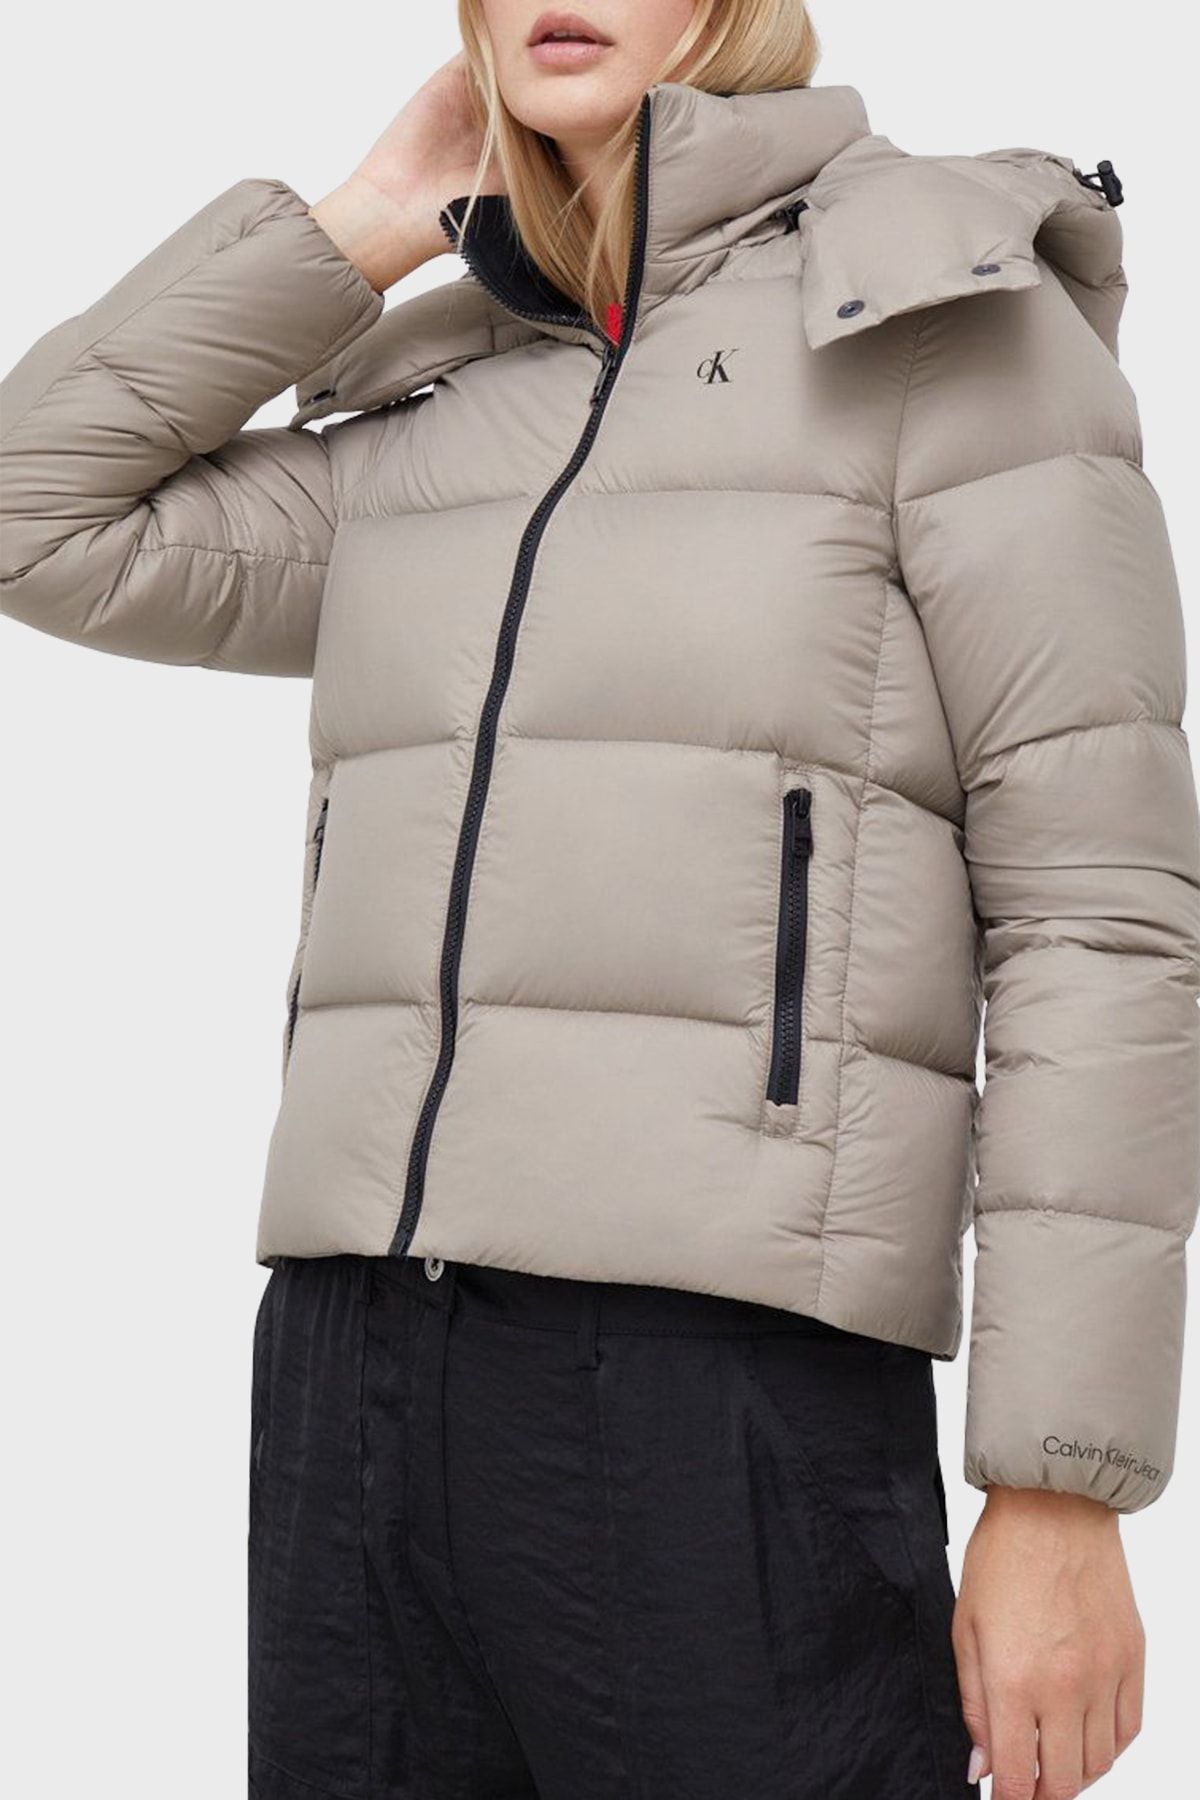 Calvin Klein Winter Jacket - Beige - Puffer - Trendyol